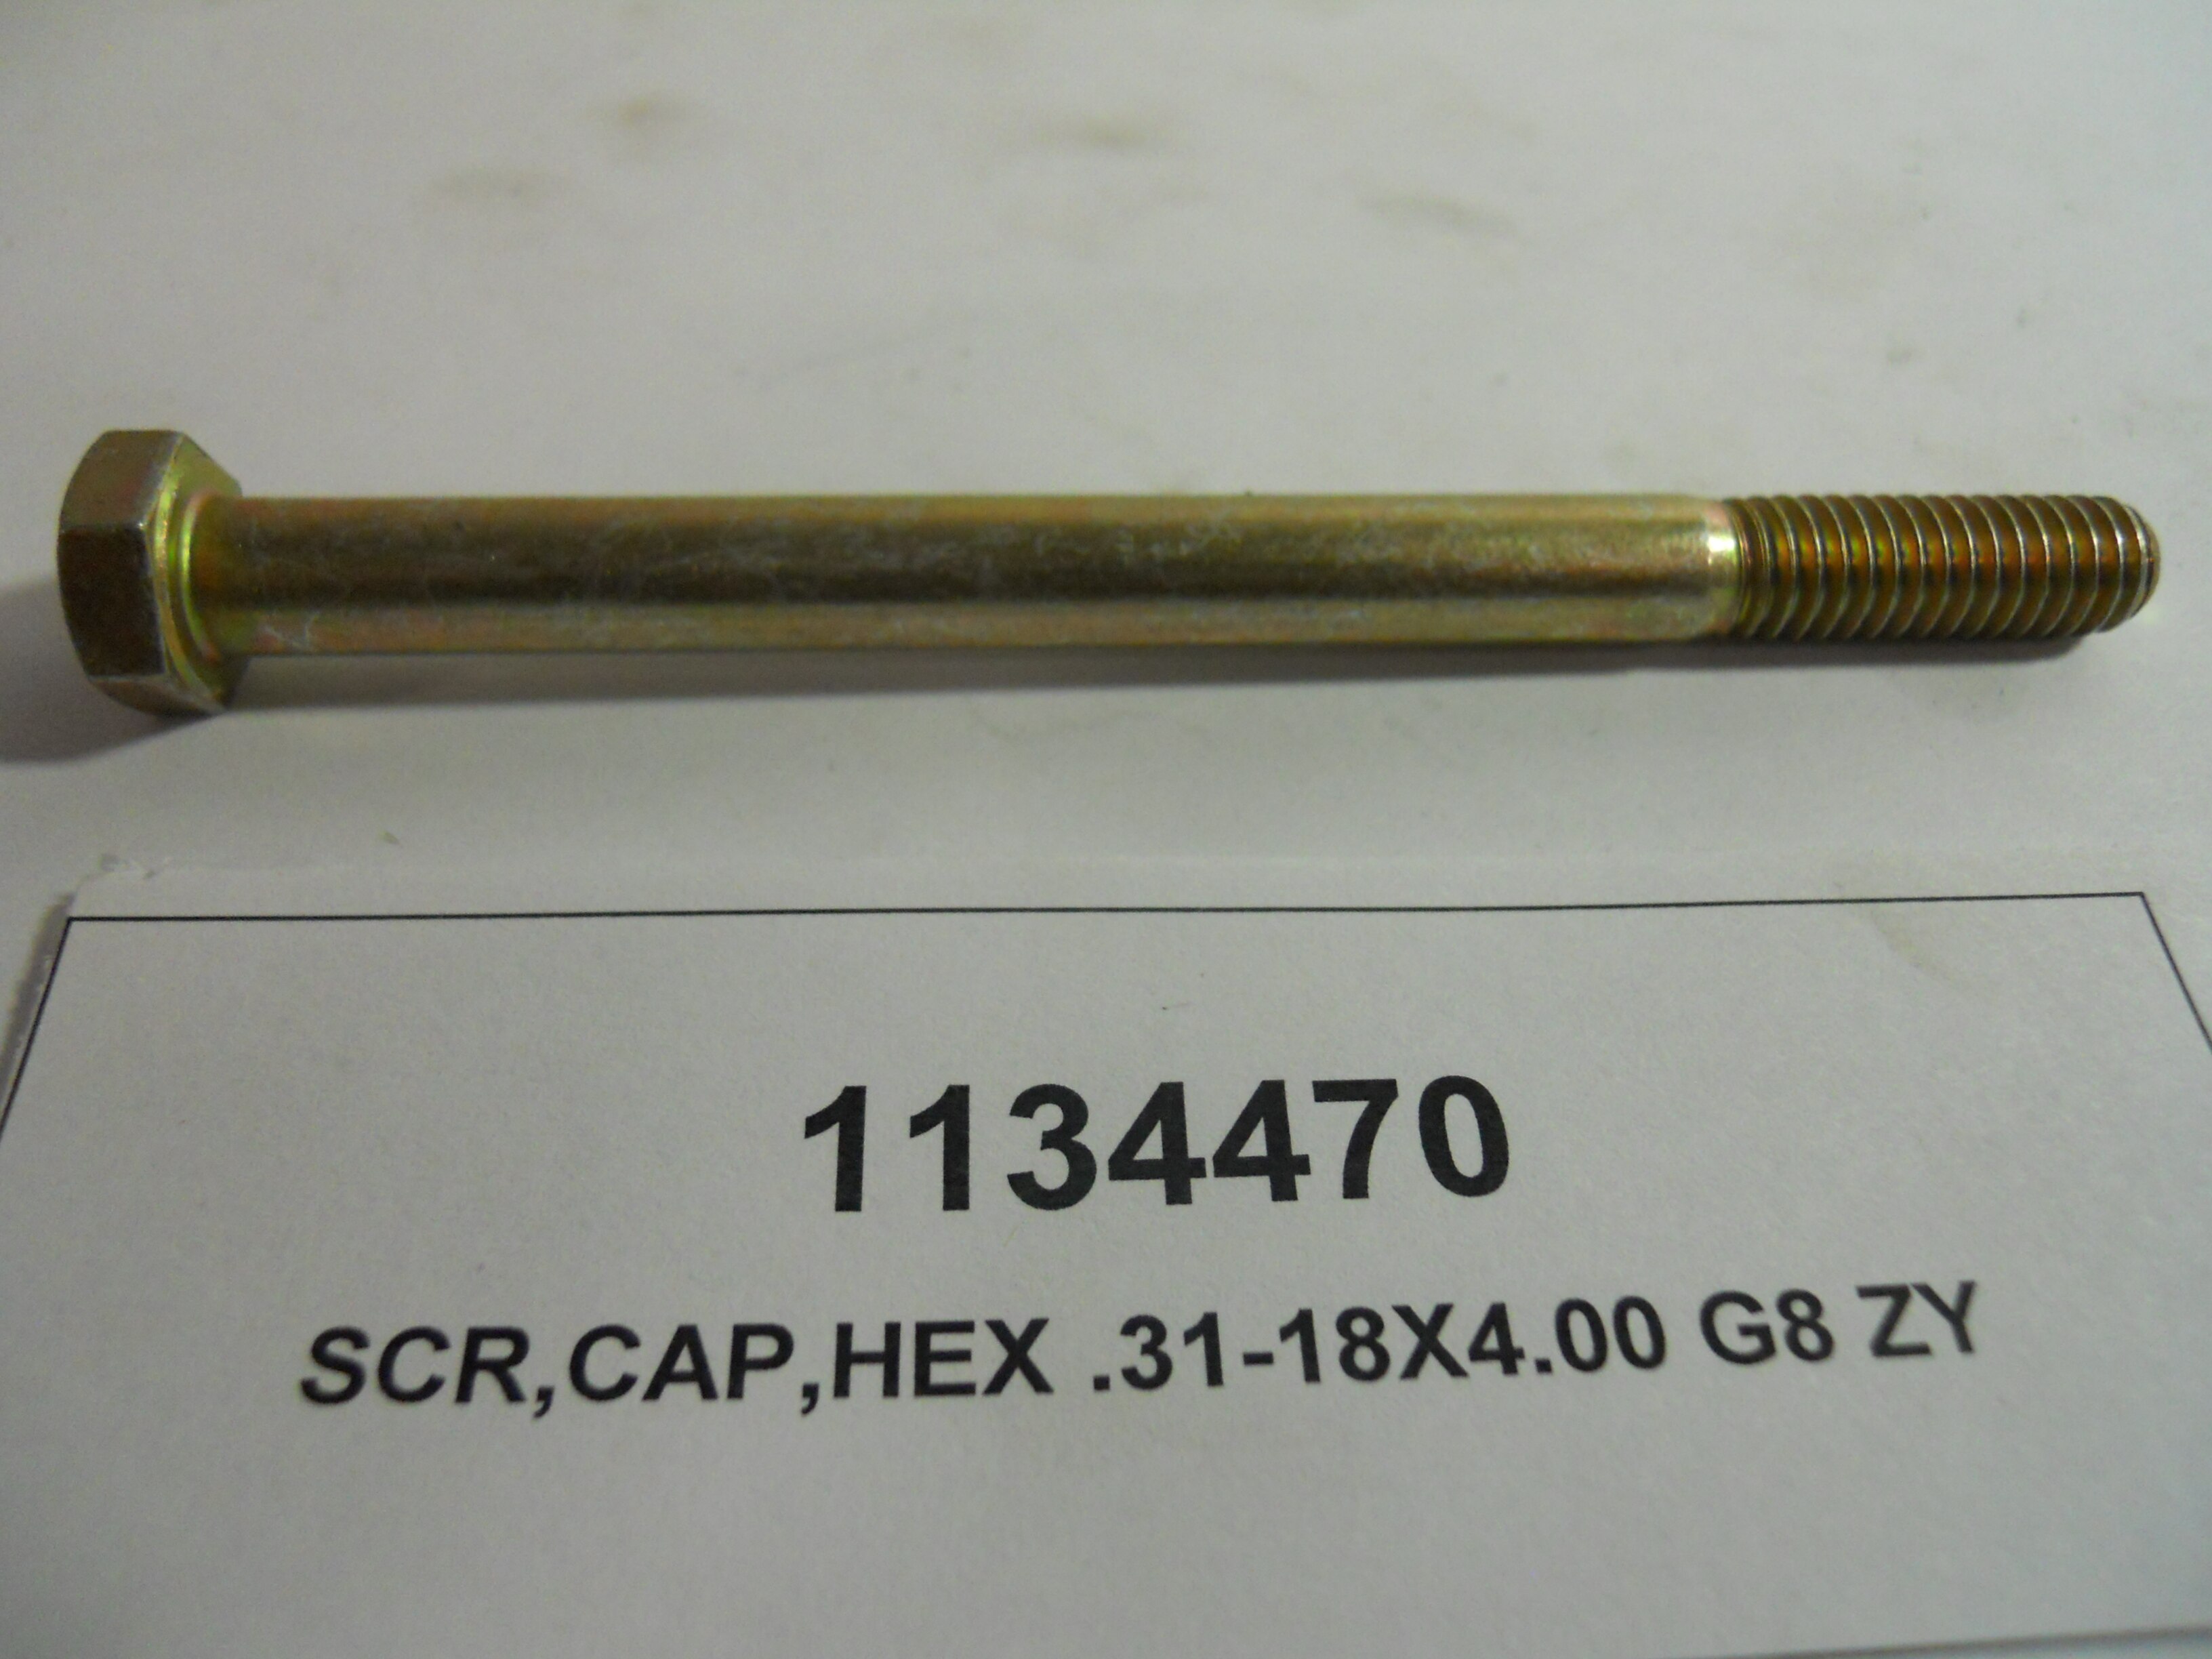 SCR,CAP,HEX .31-18X4.00 G8 ZY